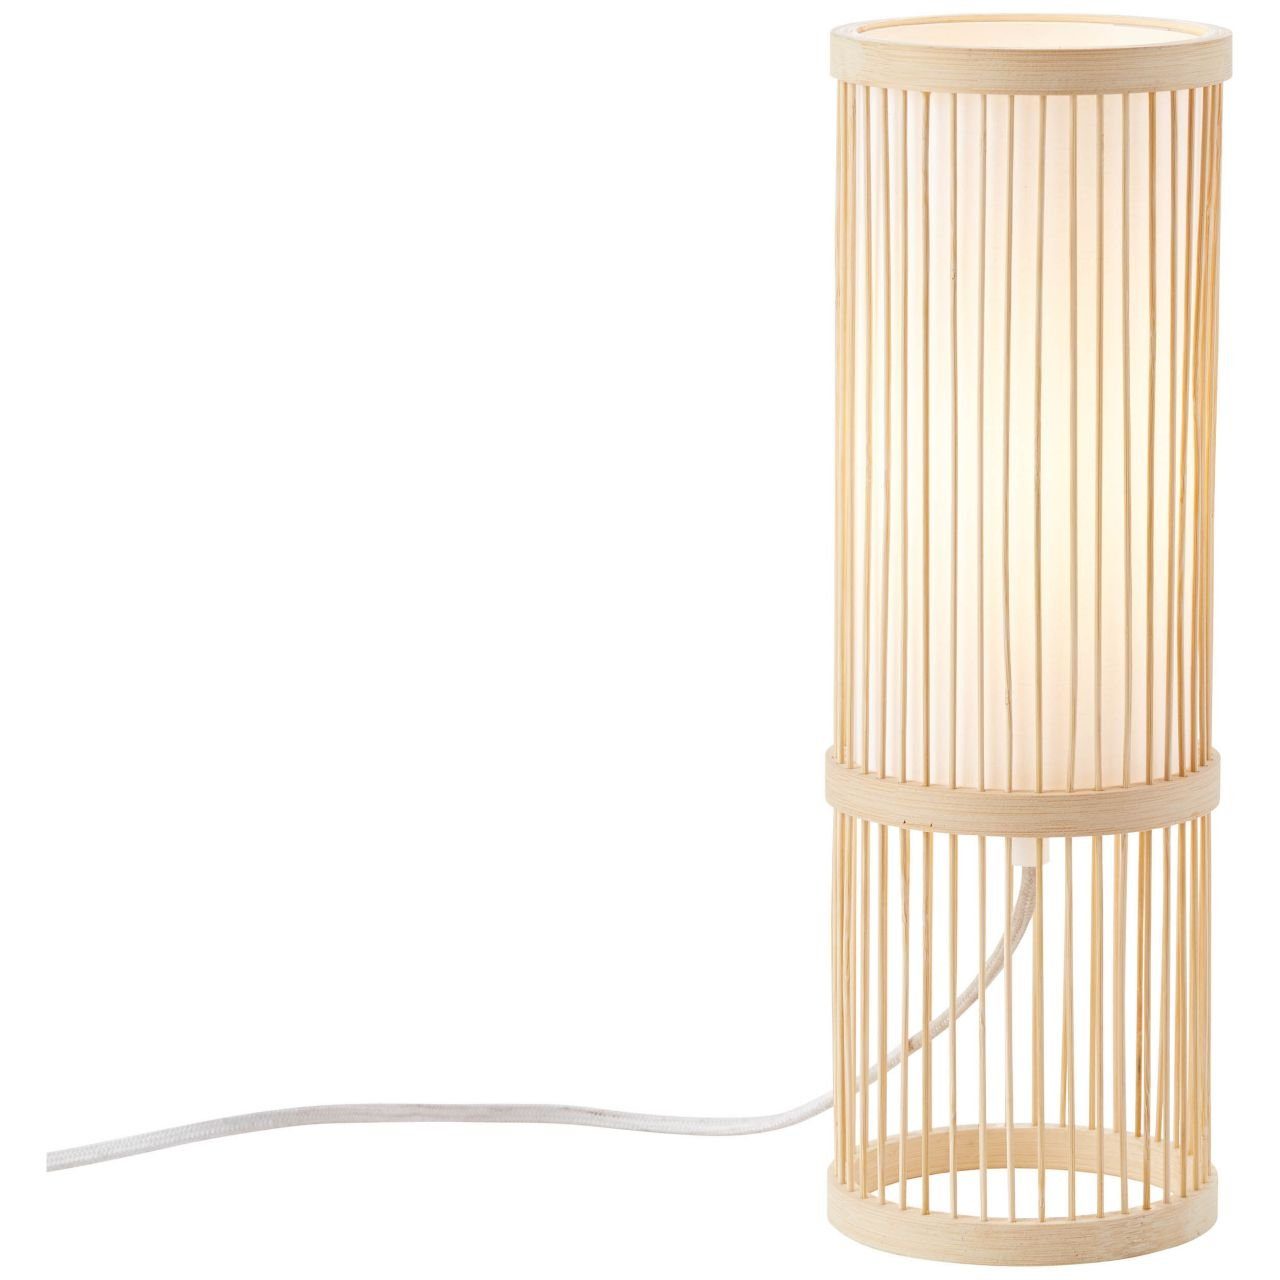 Brilliant Tischleuchte Nori, Lampe Nori Tischleuchte g.f. natur/weiß 40W, A60, E27, 1x Normallamp